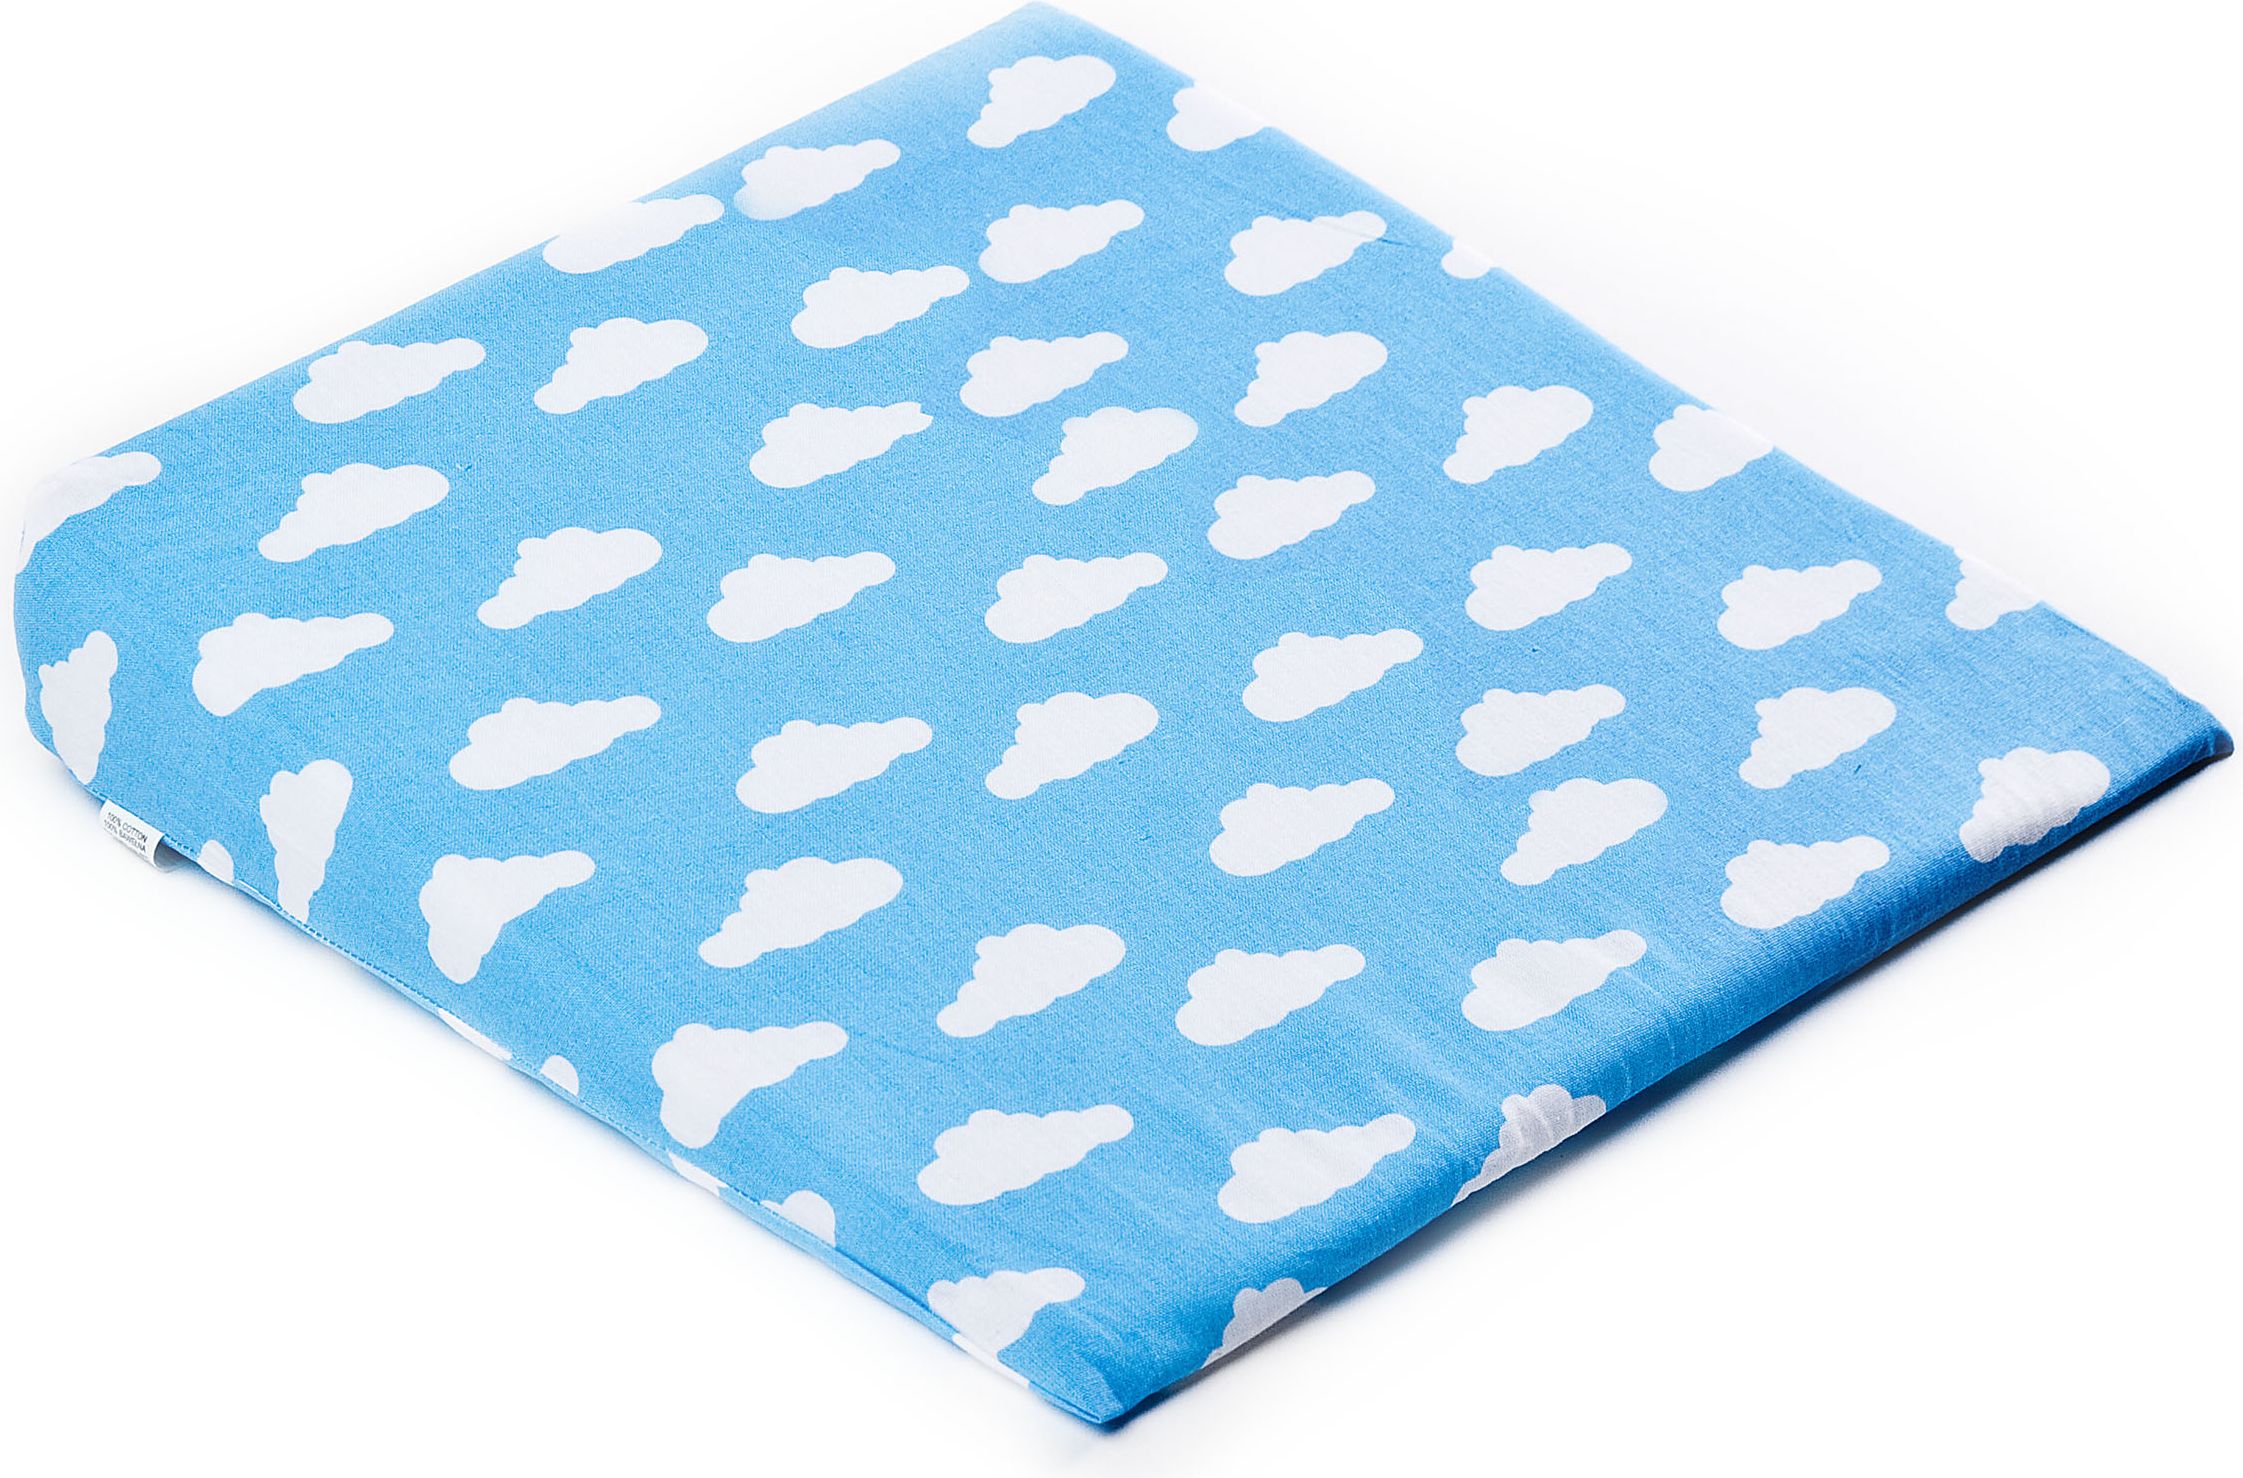 Potah na kojenecký polštář - klín SENSILLO, 38x30cm, motiv obláčky, barva modrá (bez polštáře) - obrázek 1